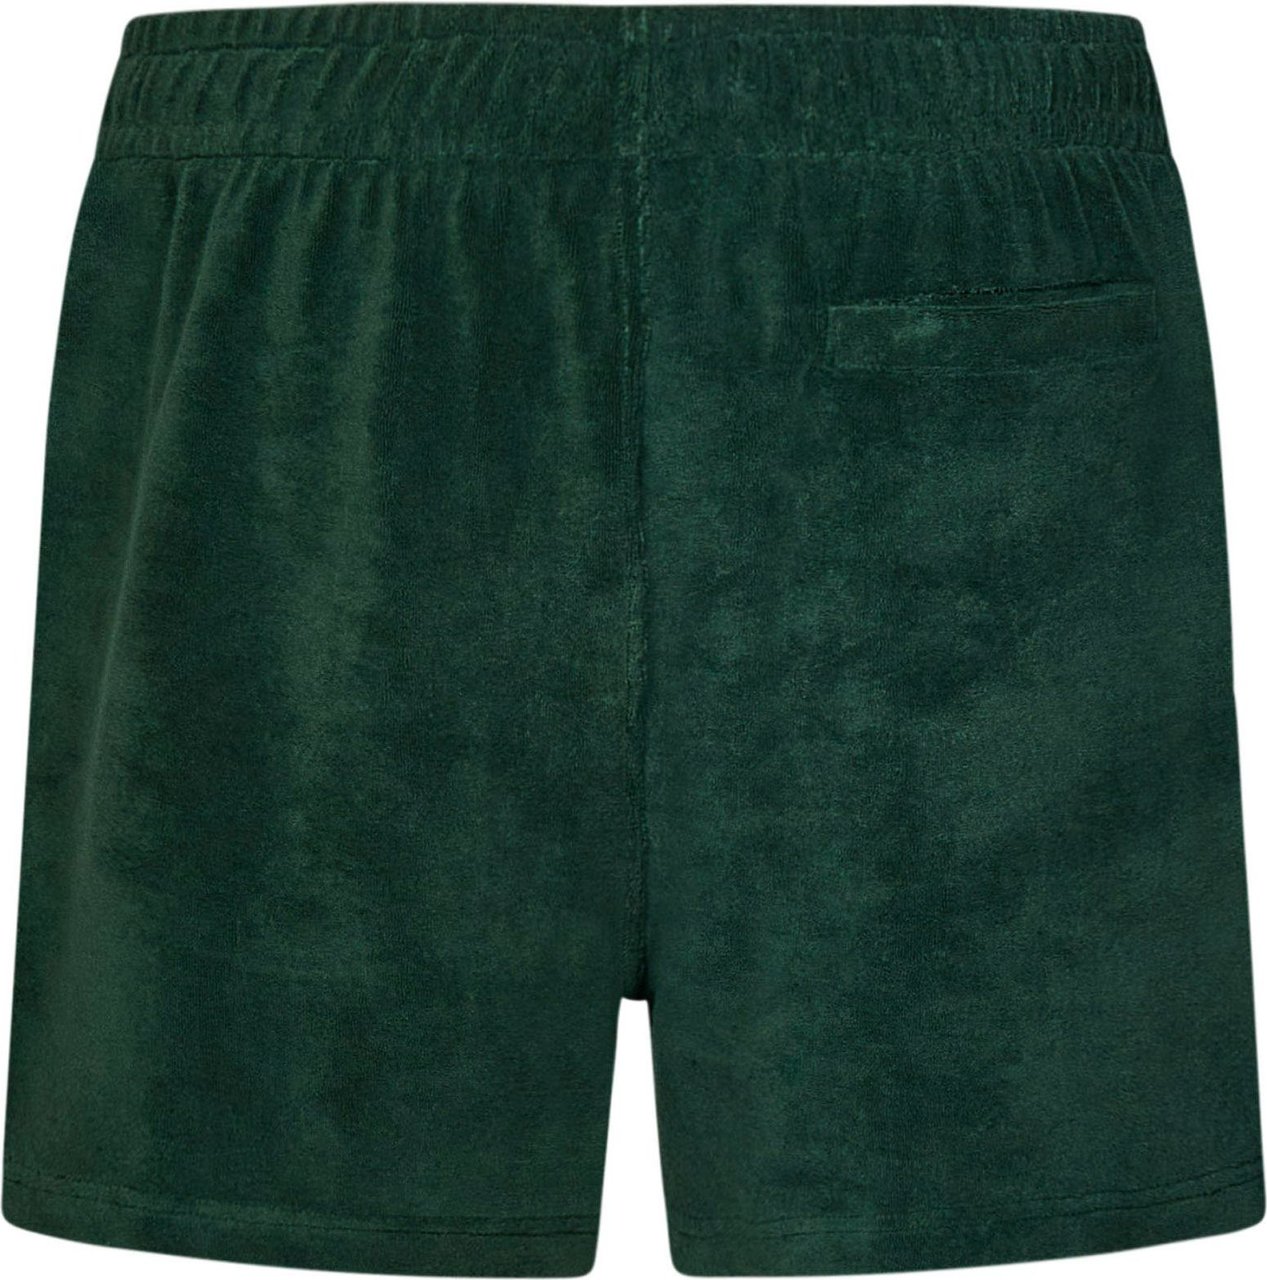 Lacoste Lacoste Shorts Green Groen